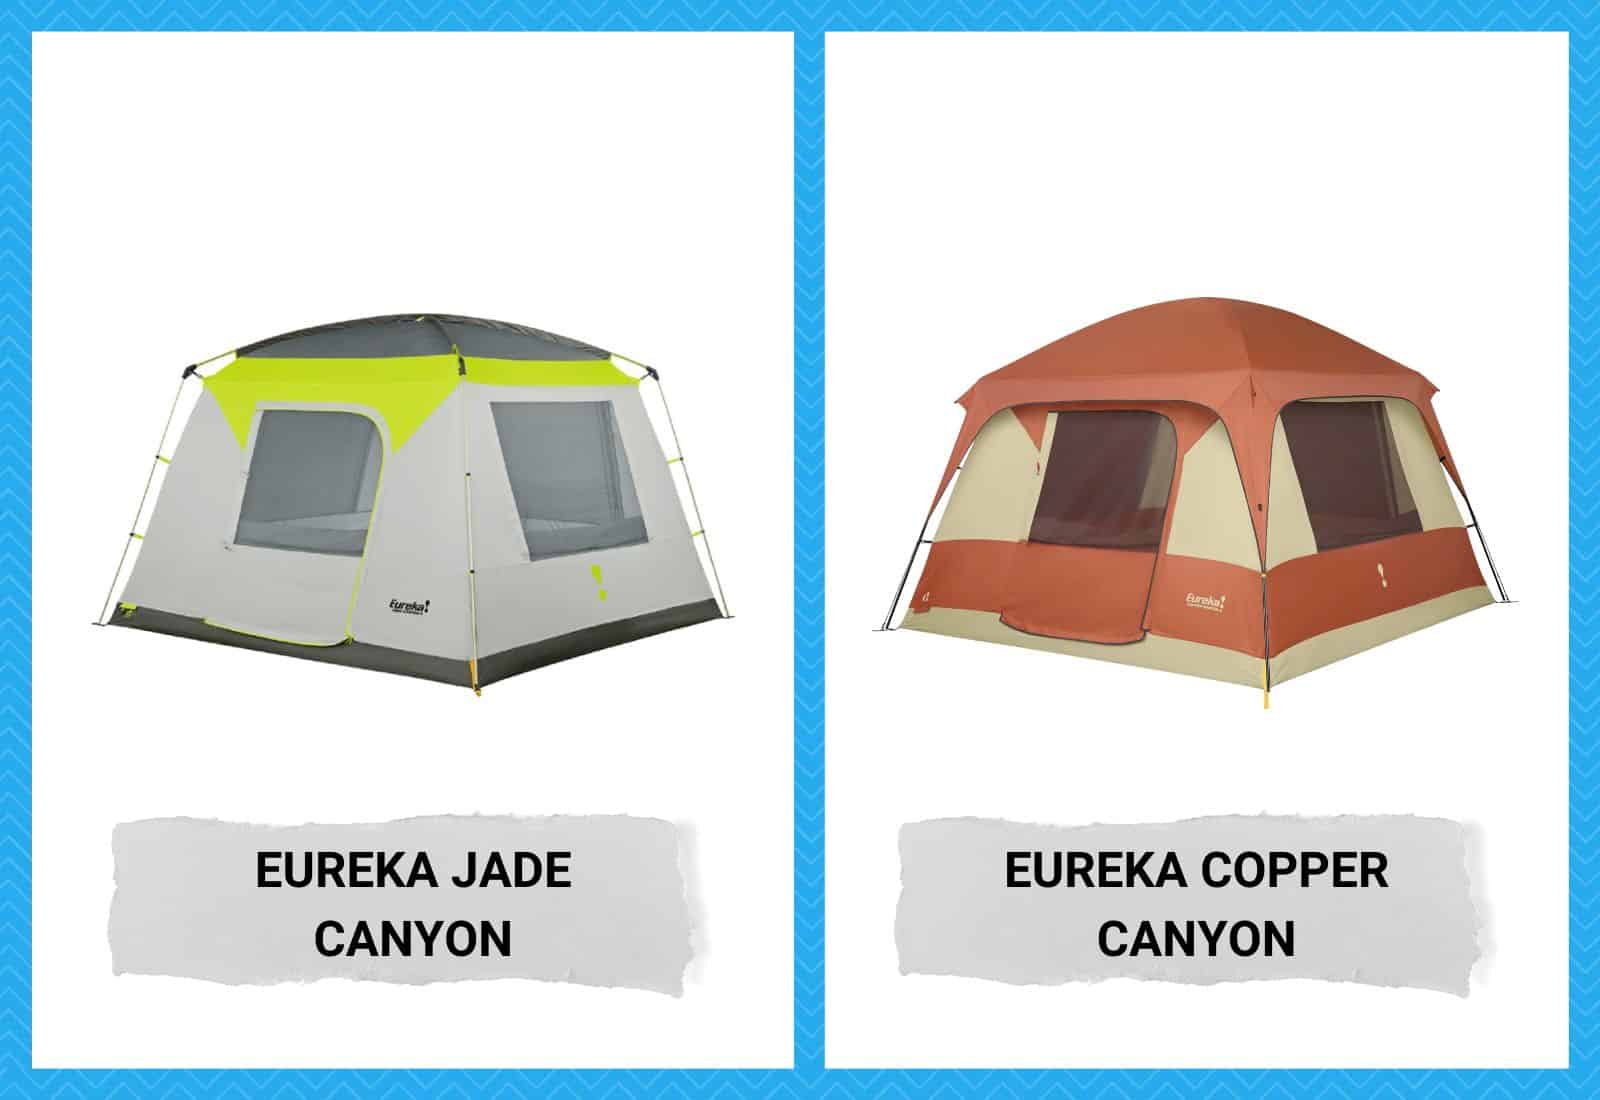 Eureka Jade Canyon vs Copper Canyon